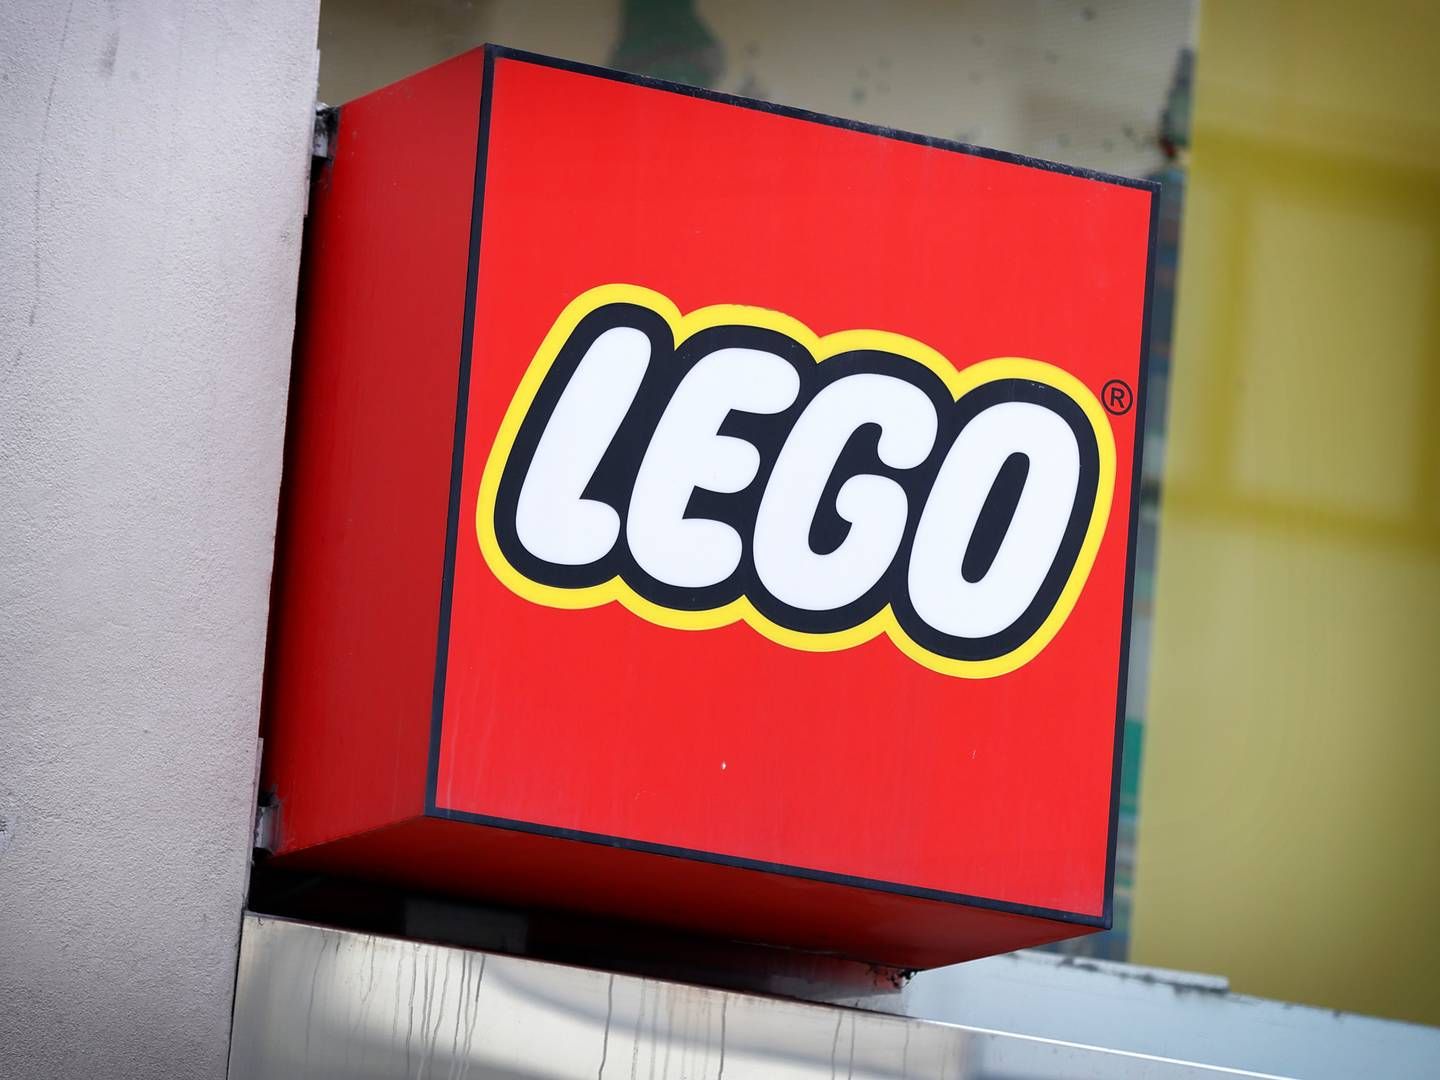 Blandt professionelle topper Lego fortsat som ønskearbejdsplads, men blandt studerende er der en ny favorit ifølge undersøgelsen fra Universum. | Foto: Jens Dresling